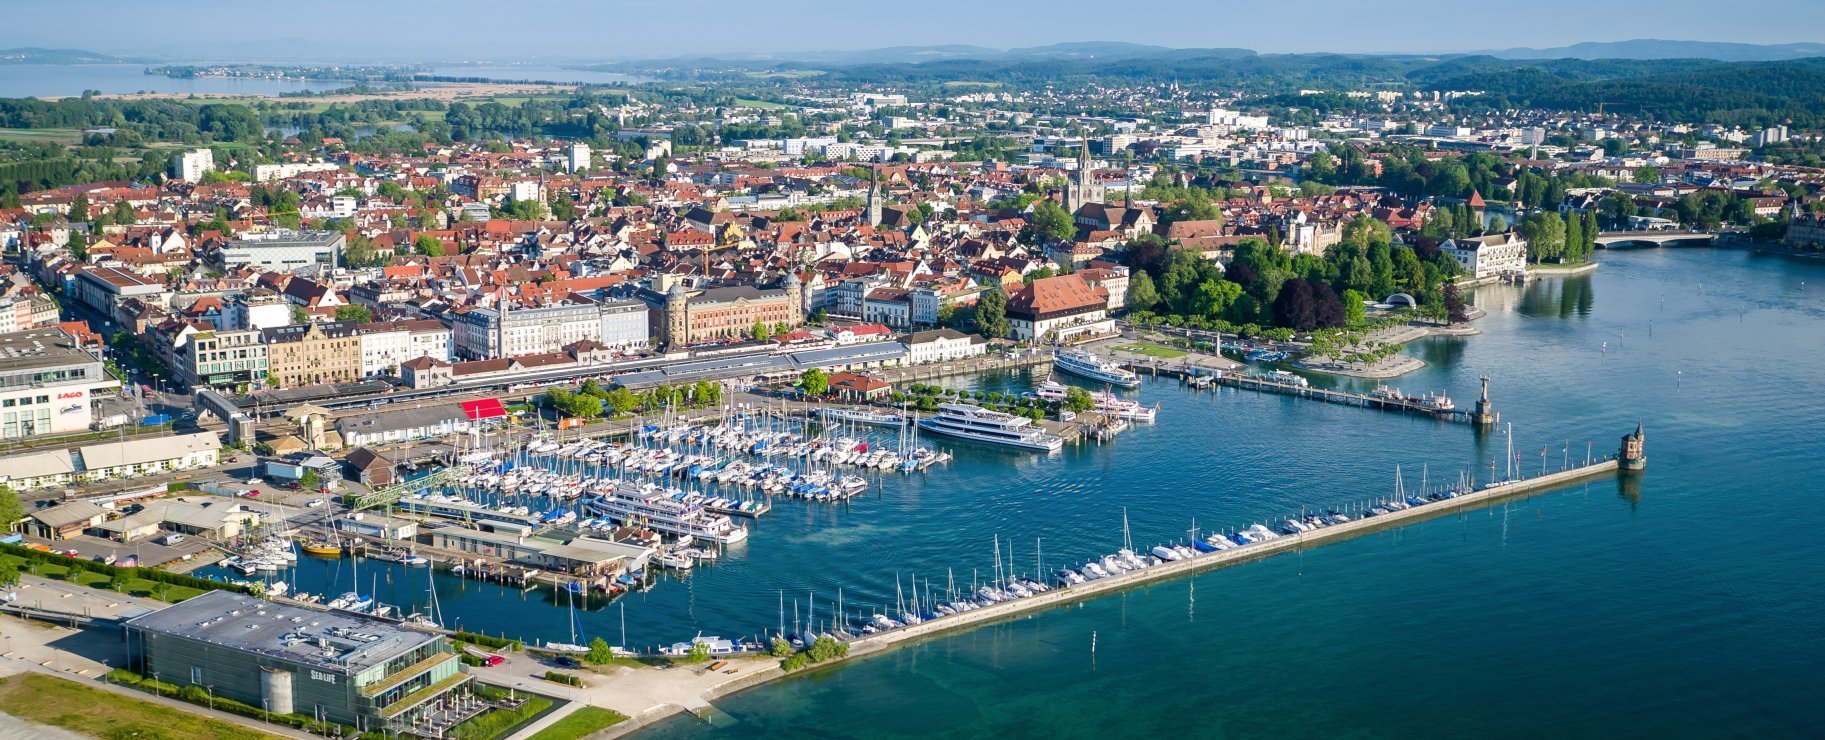 Luftaufnahme des Konstanzer Hafens